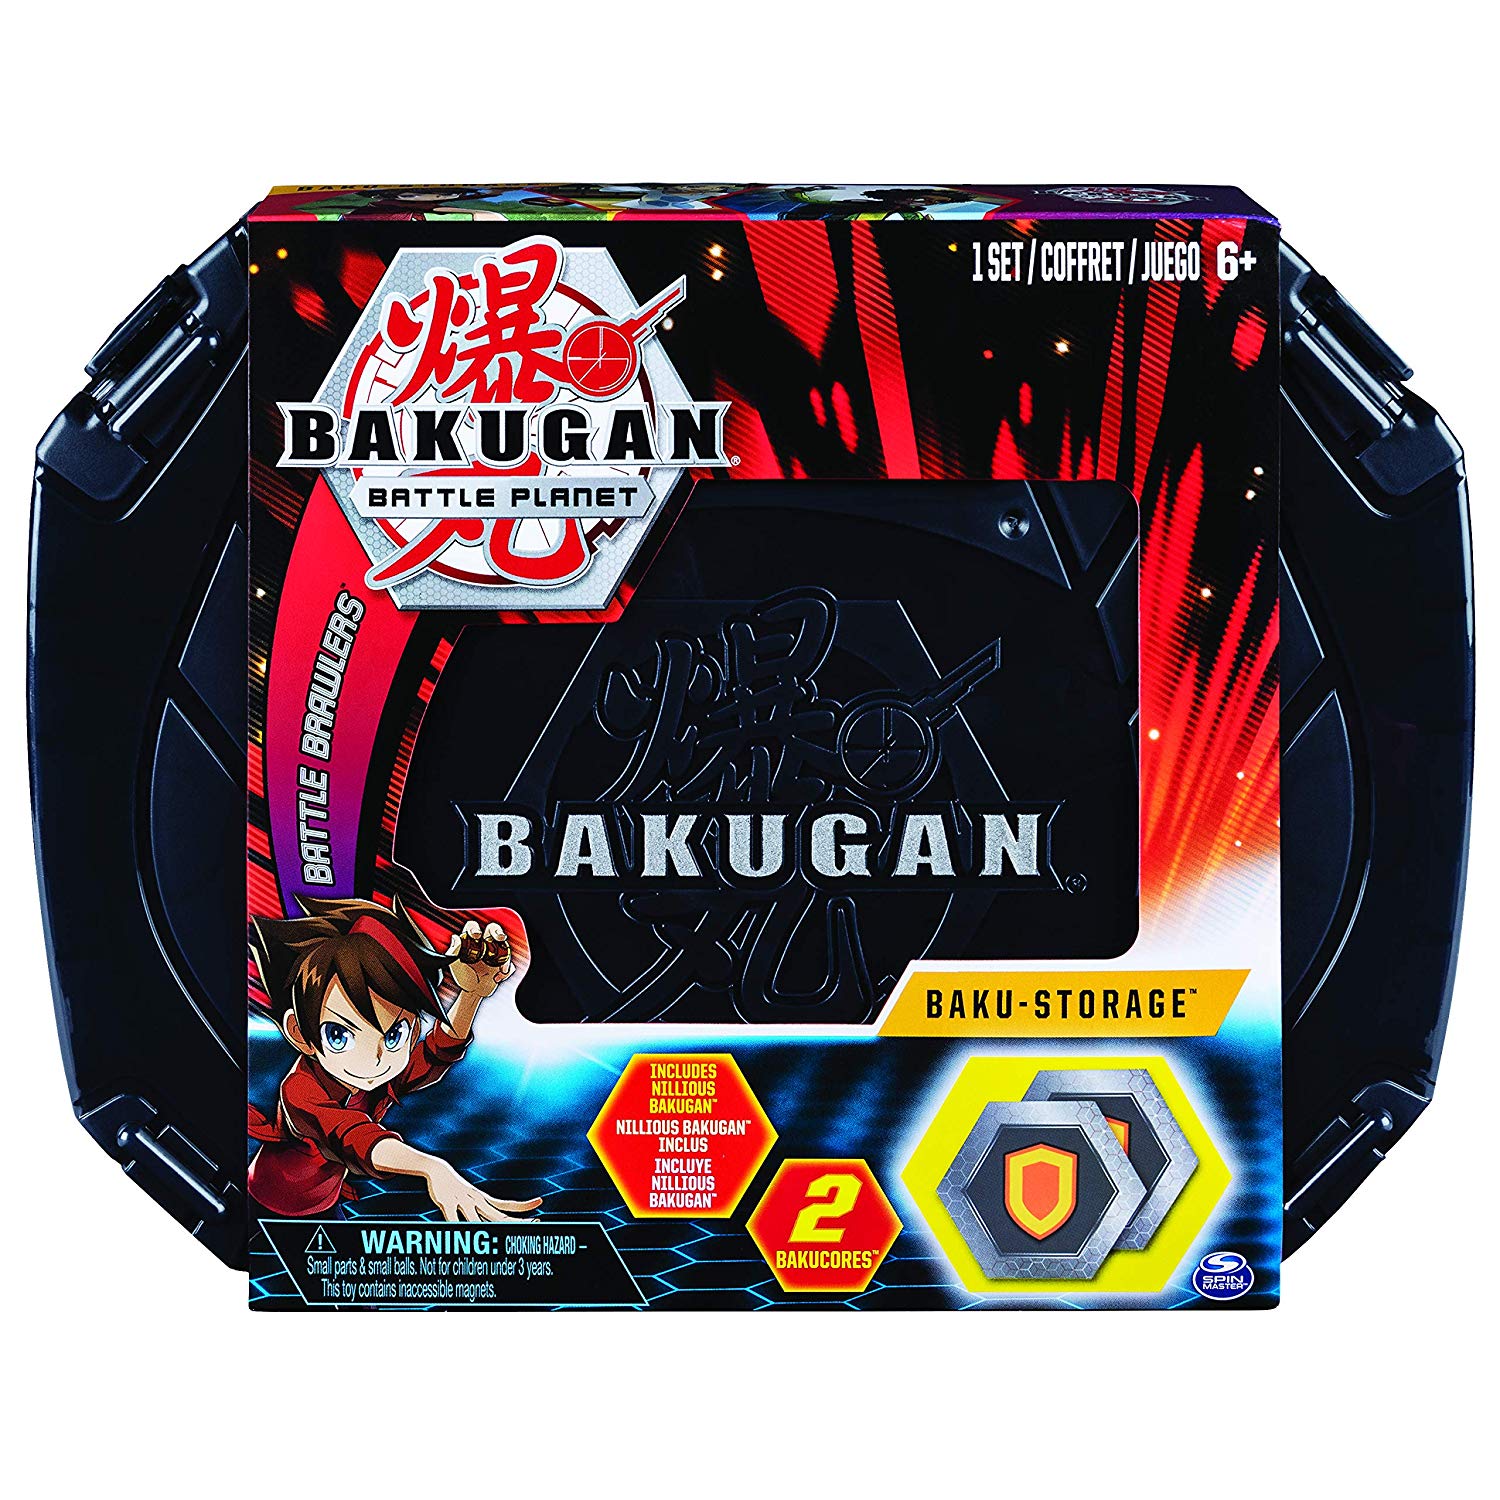 Bakugan Dragonoid Maximus - Jouet Bakugan